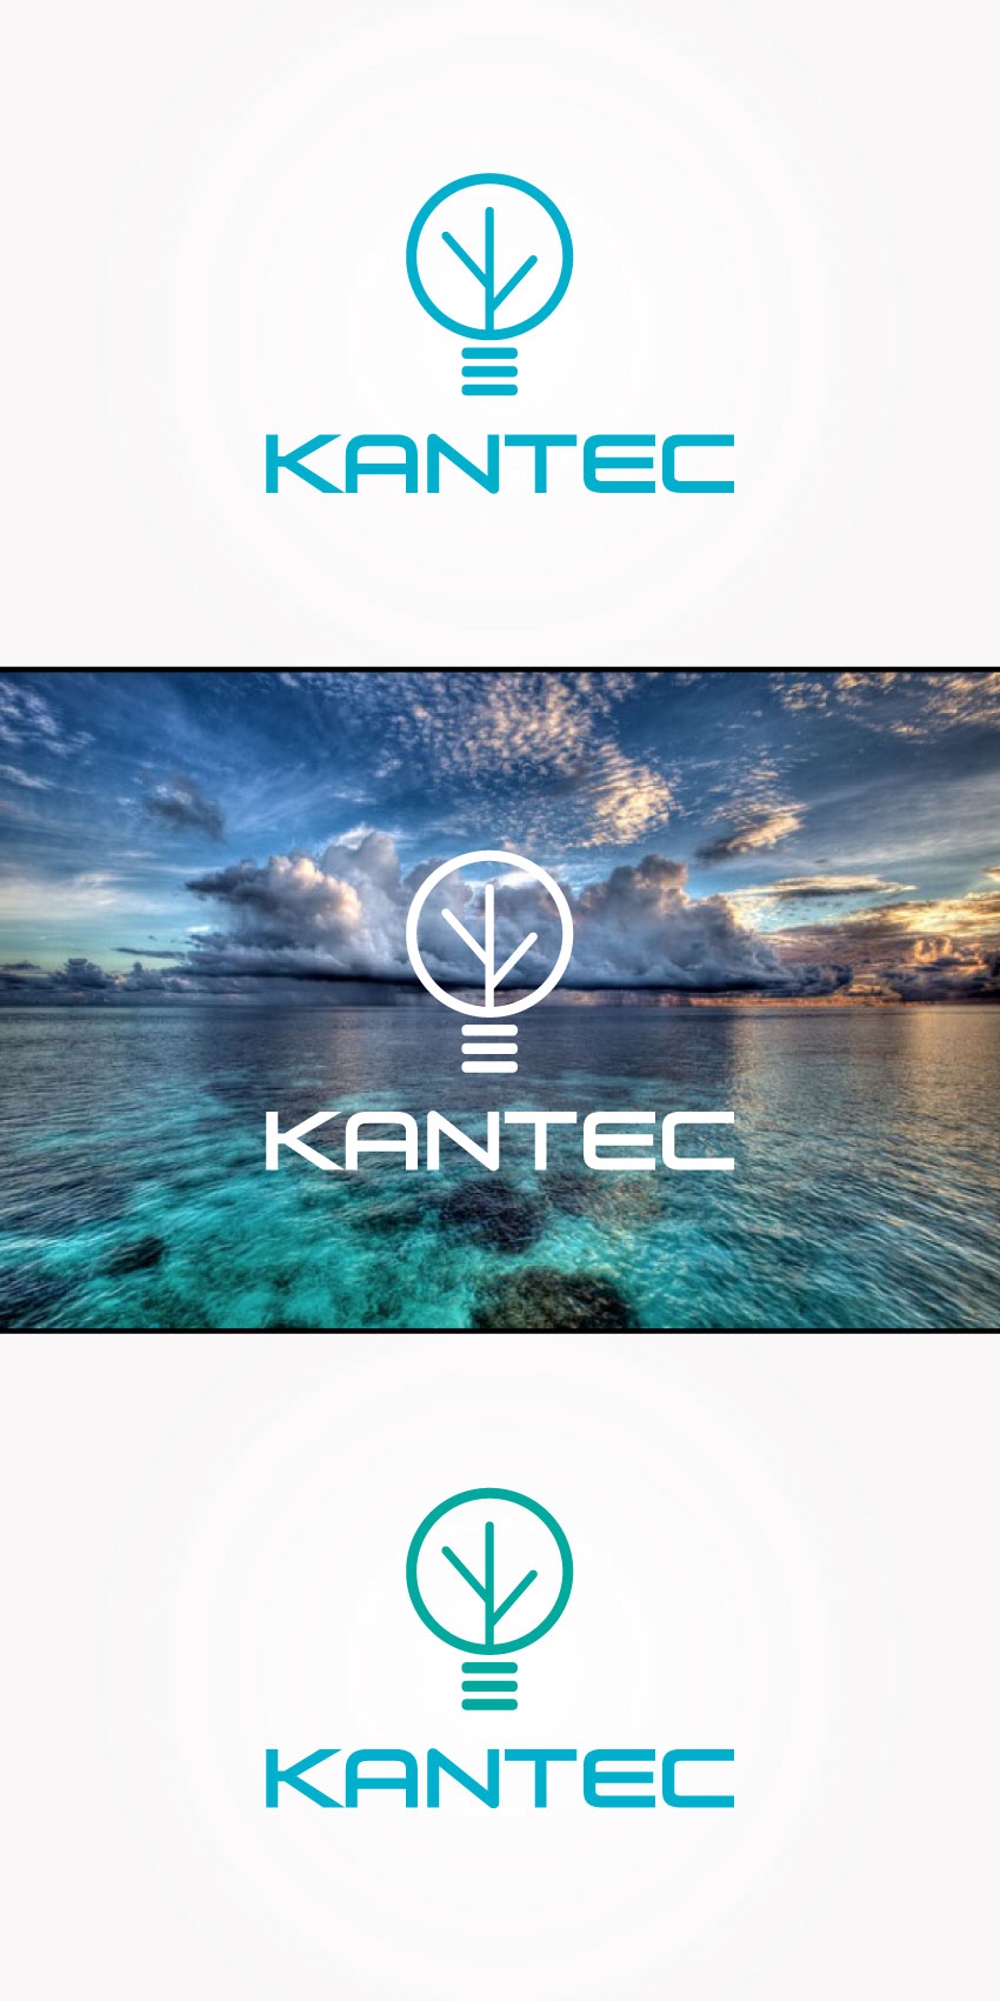 KANTEC-02.jpg